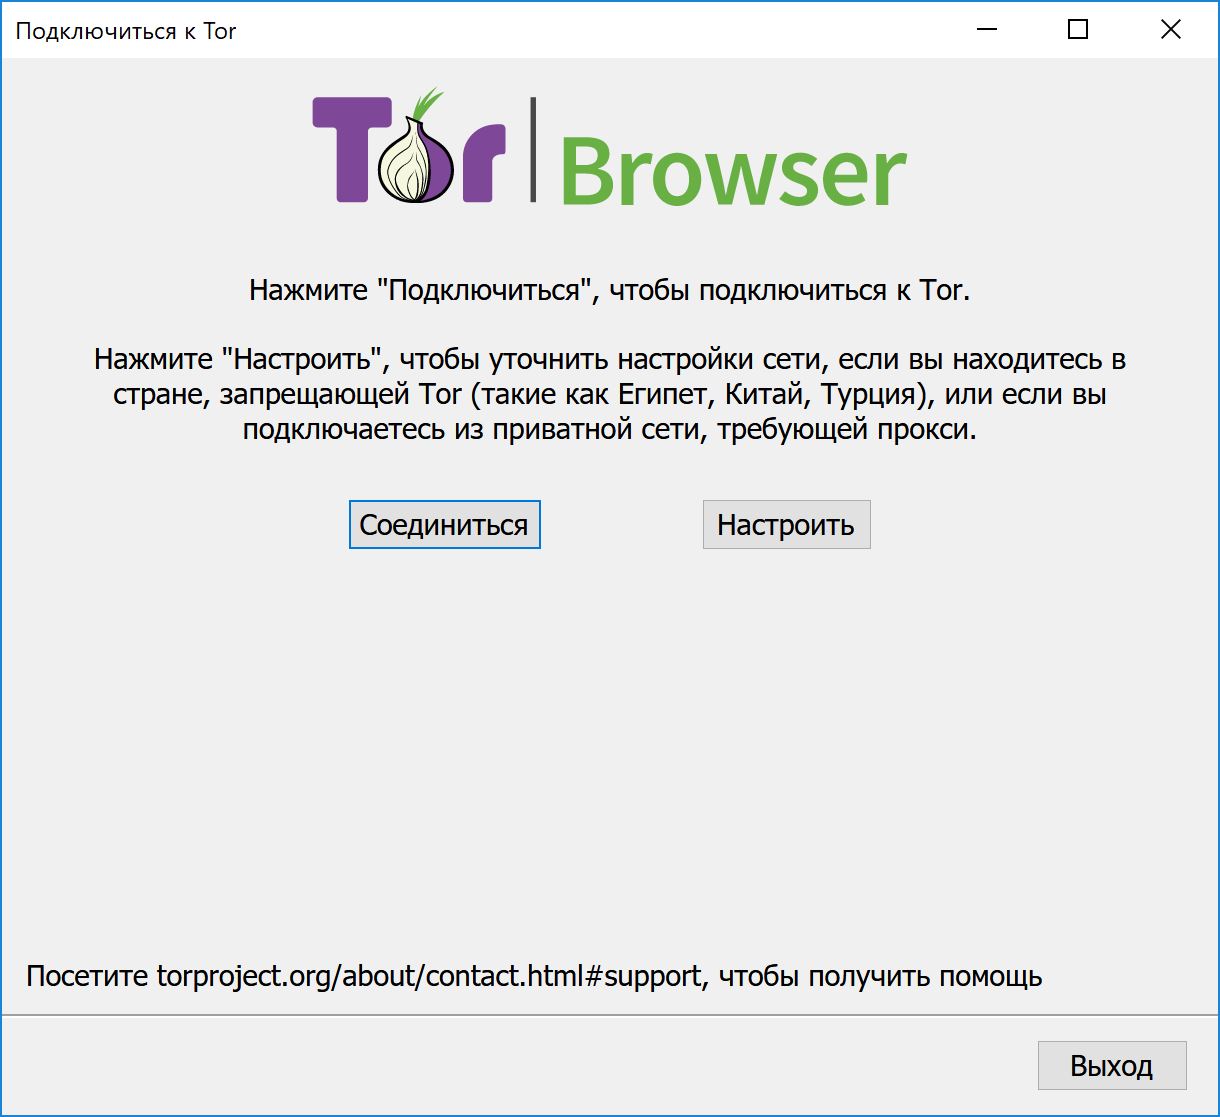 Тор браузер скачать русскую версию бесплатно gidra настроить браузер тор на россию hyrda вход